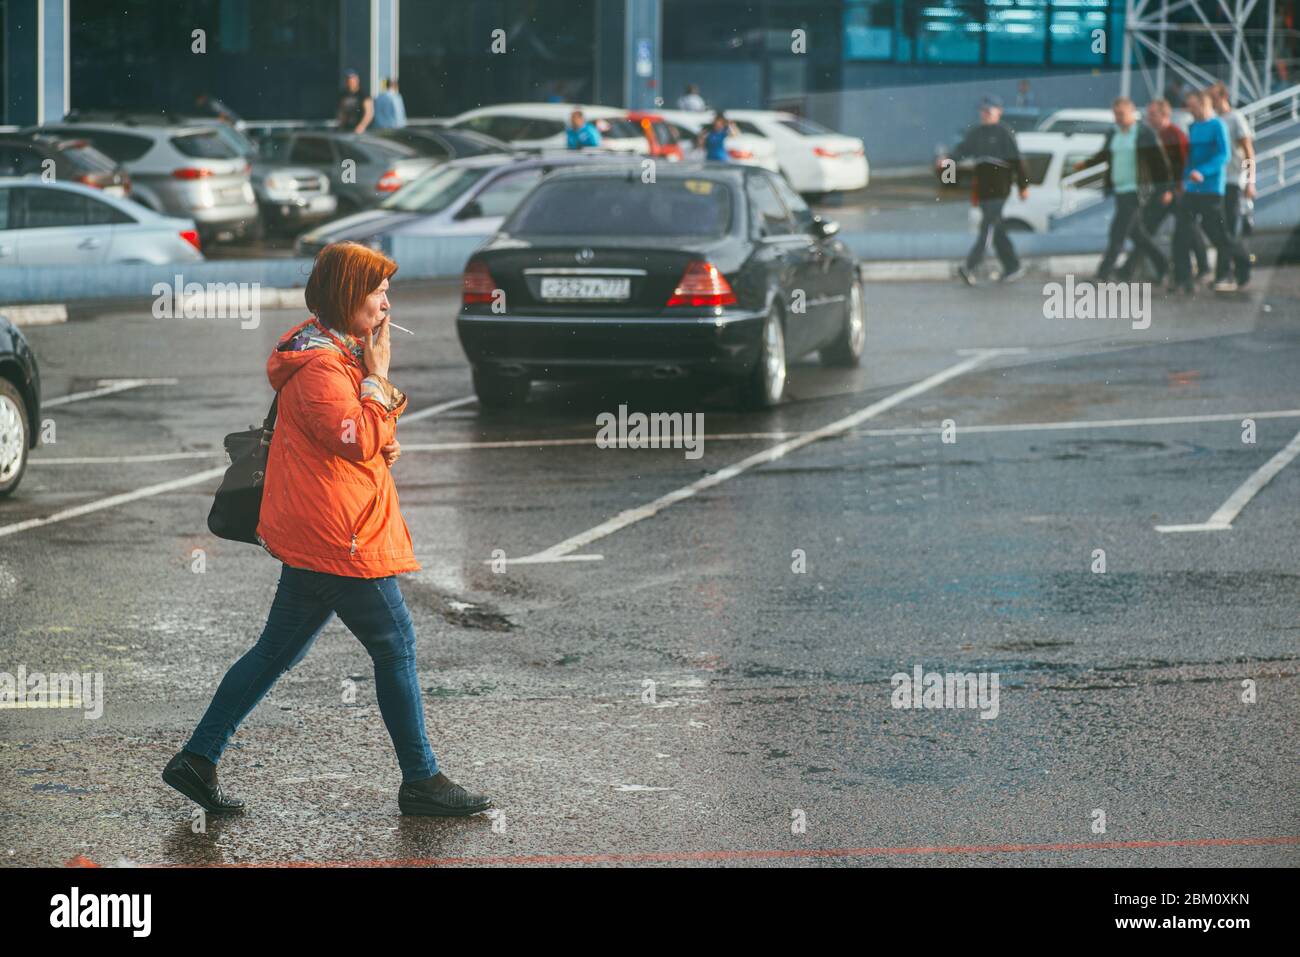 Mosca, Russia - 2 MAGGIO 2018: Una donna in giacca rossa cammina lungo una strada bagnata e fuma una sigaretta in un luogo pubblico Foto Stock